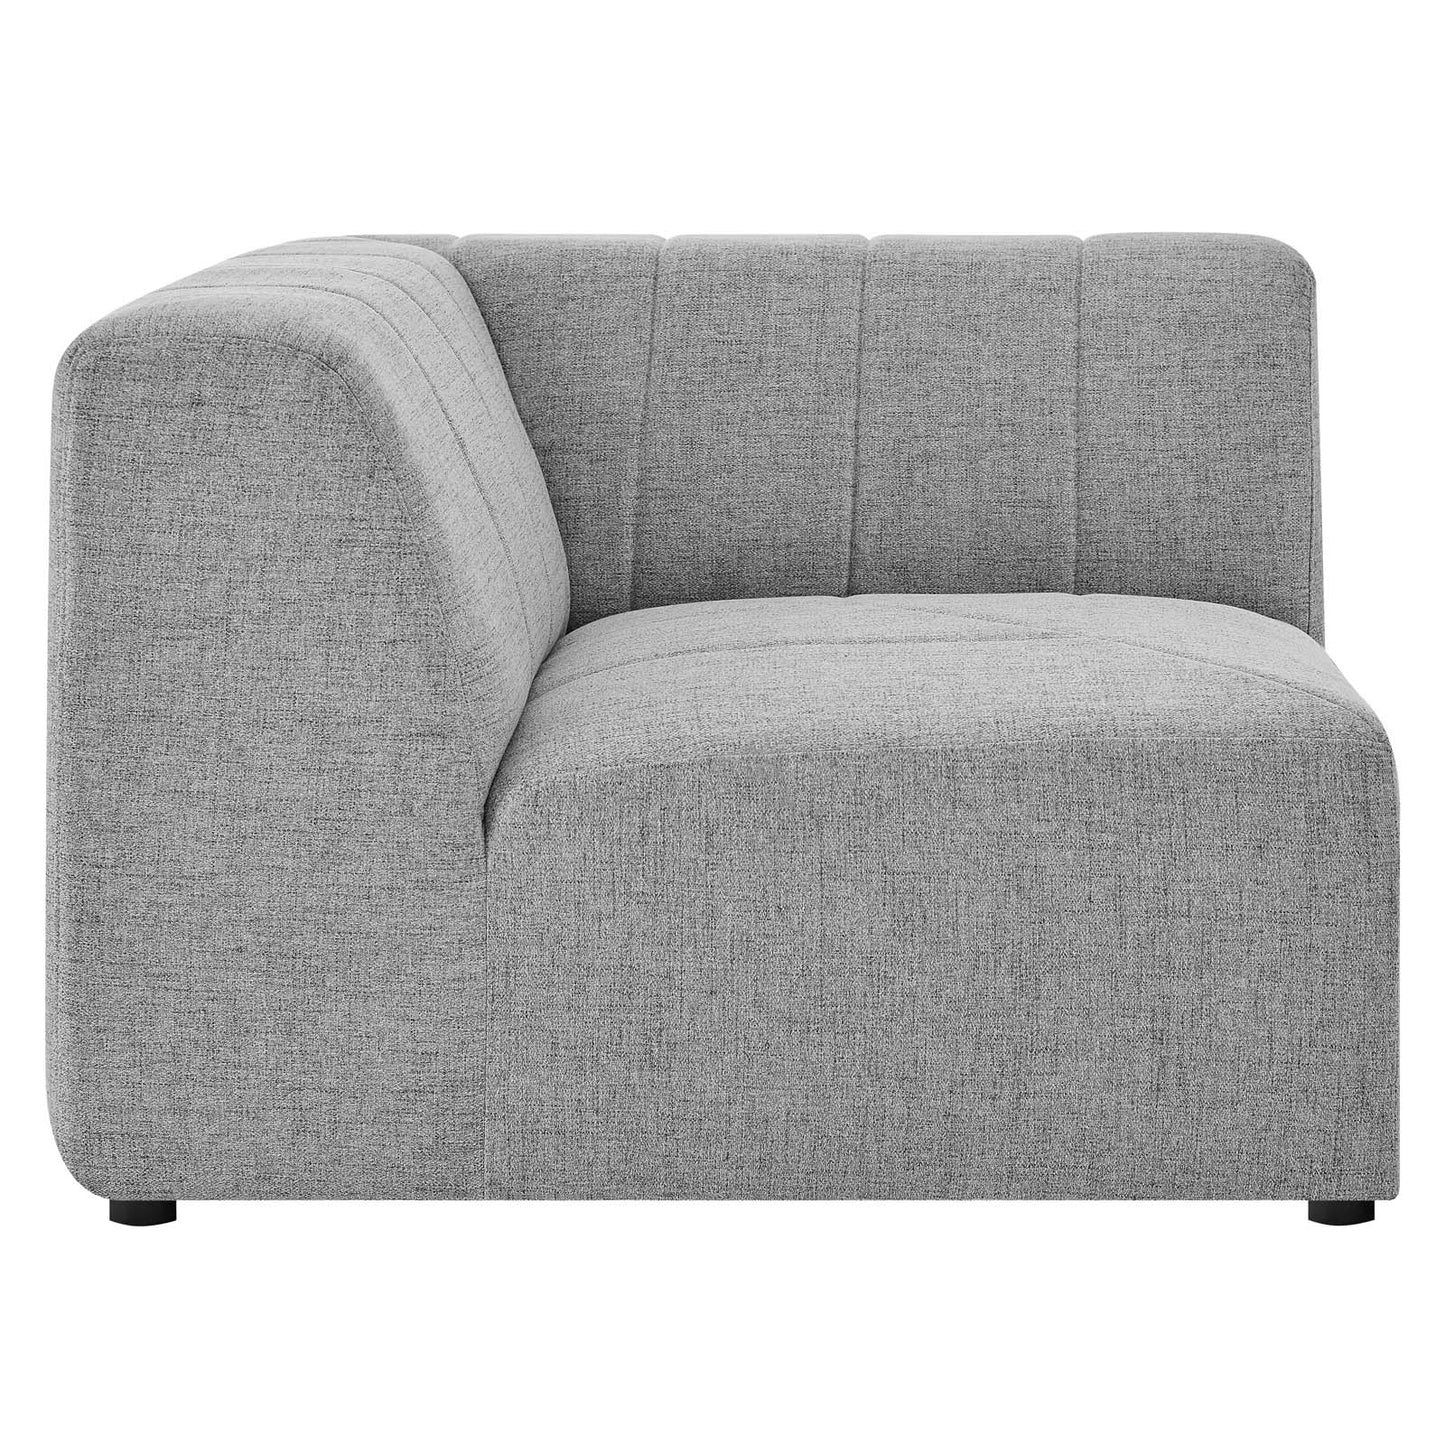 Bartlett Upholstered Fabric Corner Chair Light Gray EEI-4402-LGR